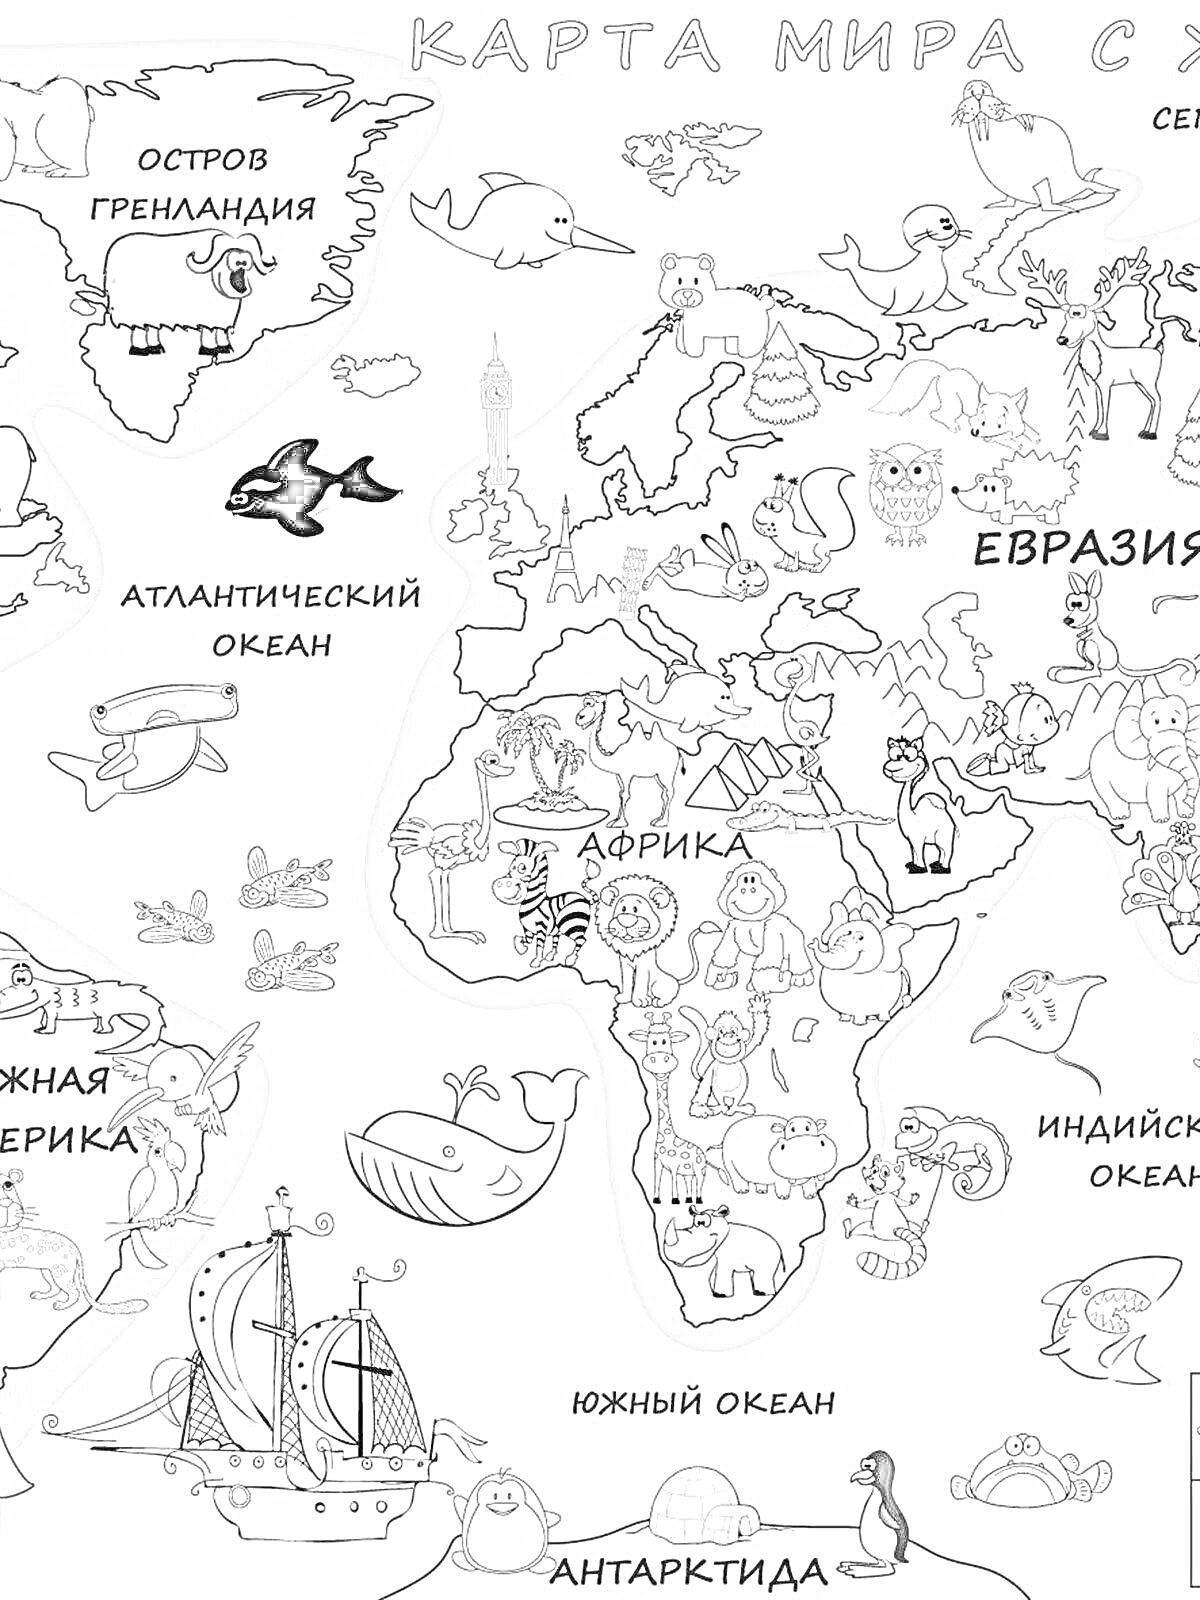 Раскраска Карта мира с животными, изображениями континентов, океанов, зелёного острова Гренландии, Атлантического океана, Евразии, Африки, Южной Америки, Антарктиды, уточки, пингвина, кита, медведя, слона, жирафа, льва, обезьяны, верблюда, и корабля.